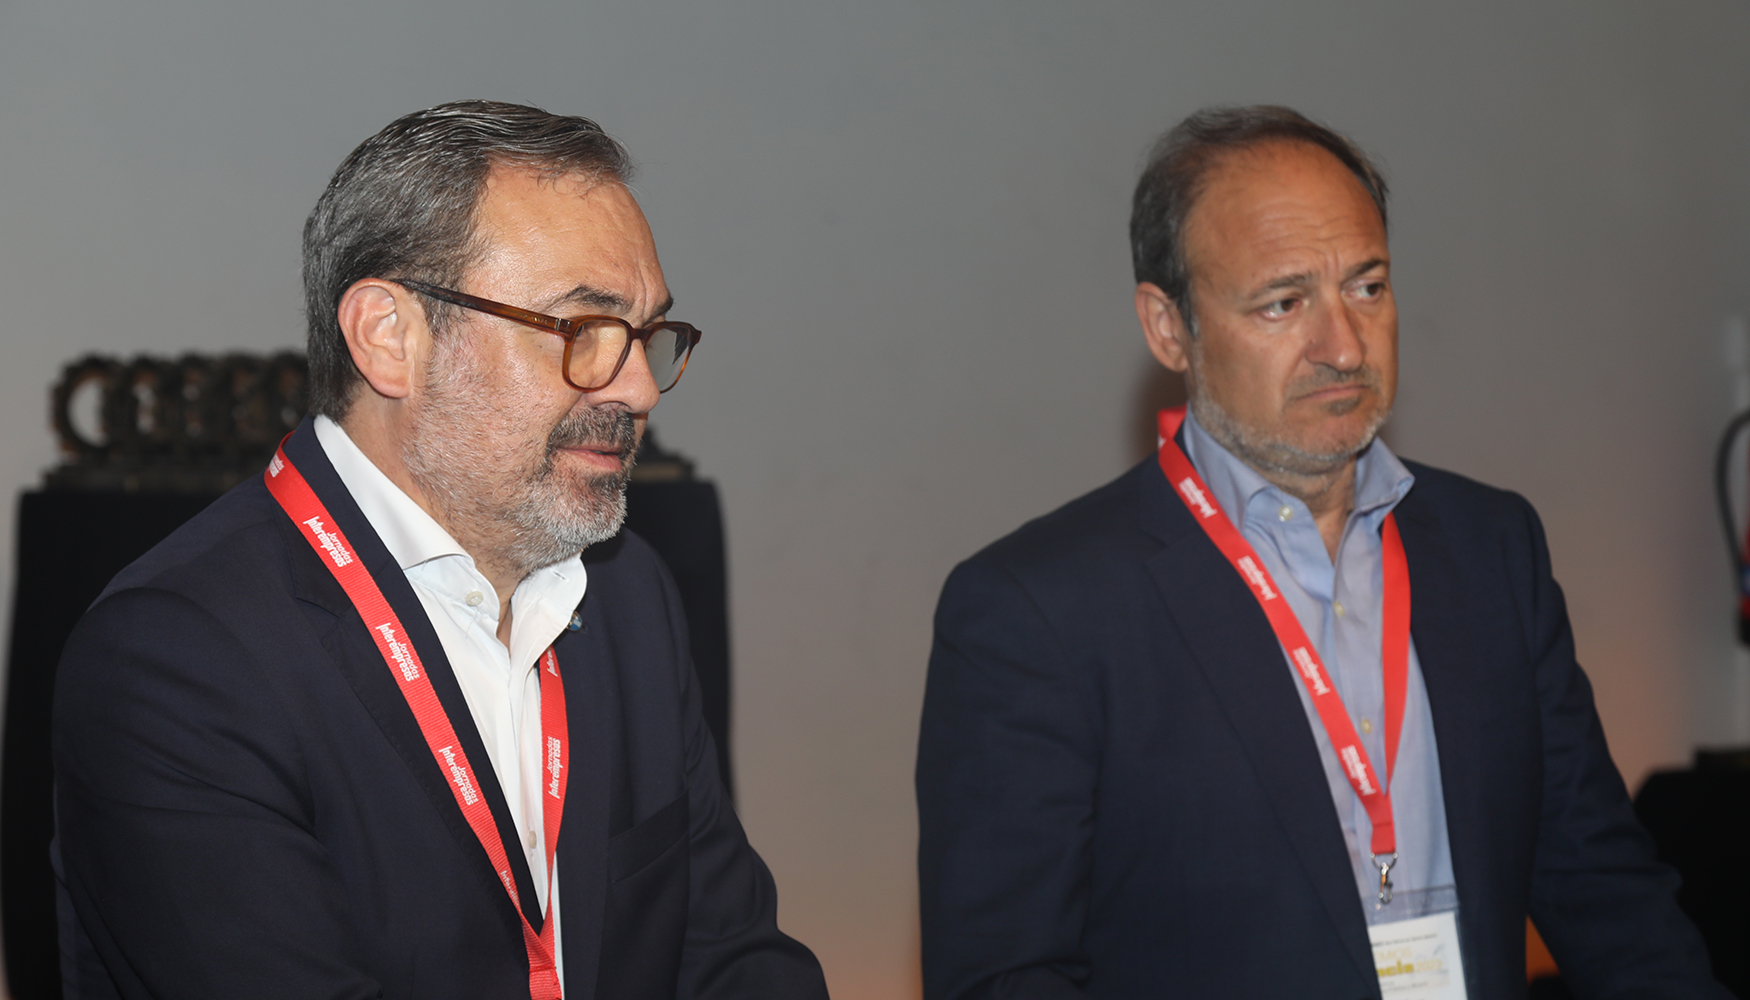 Rogelio Cuairn y Alberto Lpez, director general y director de Desarrollo de Negocio de Feria de Zaragoza